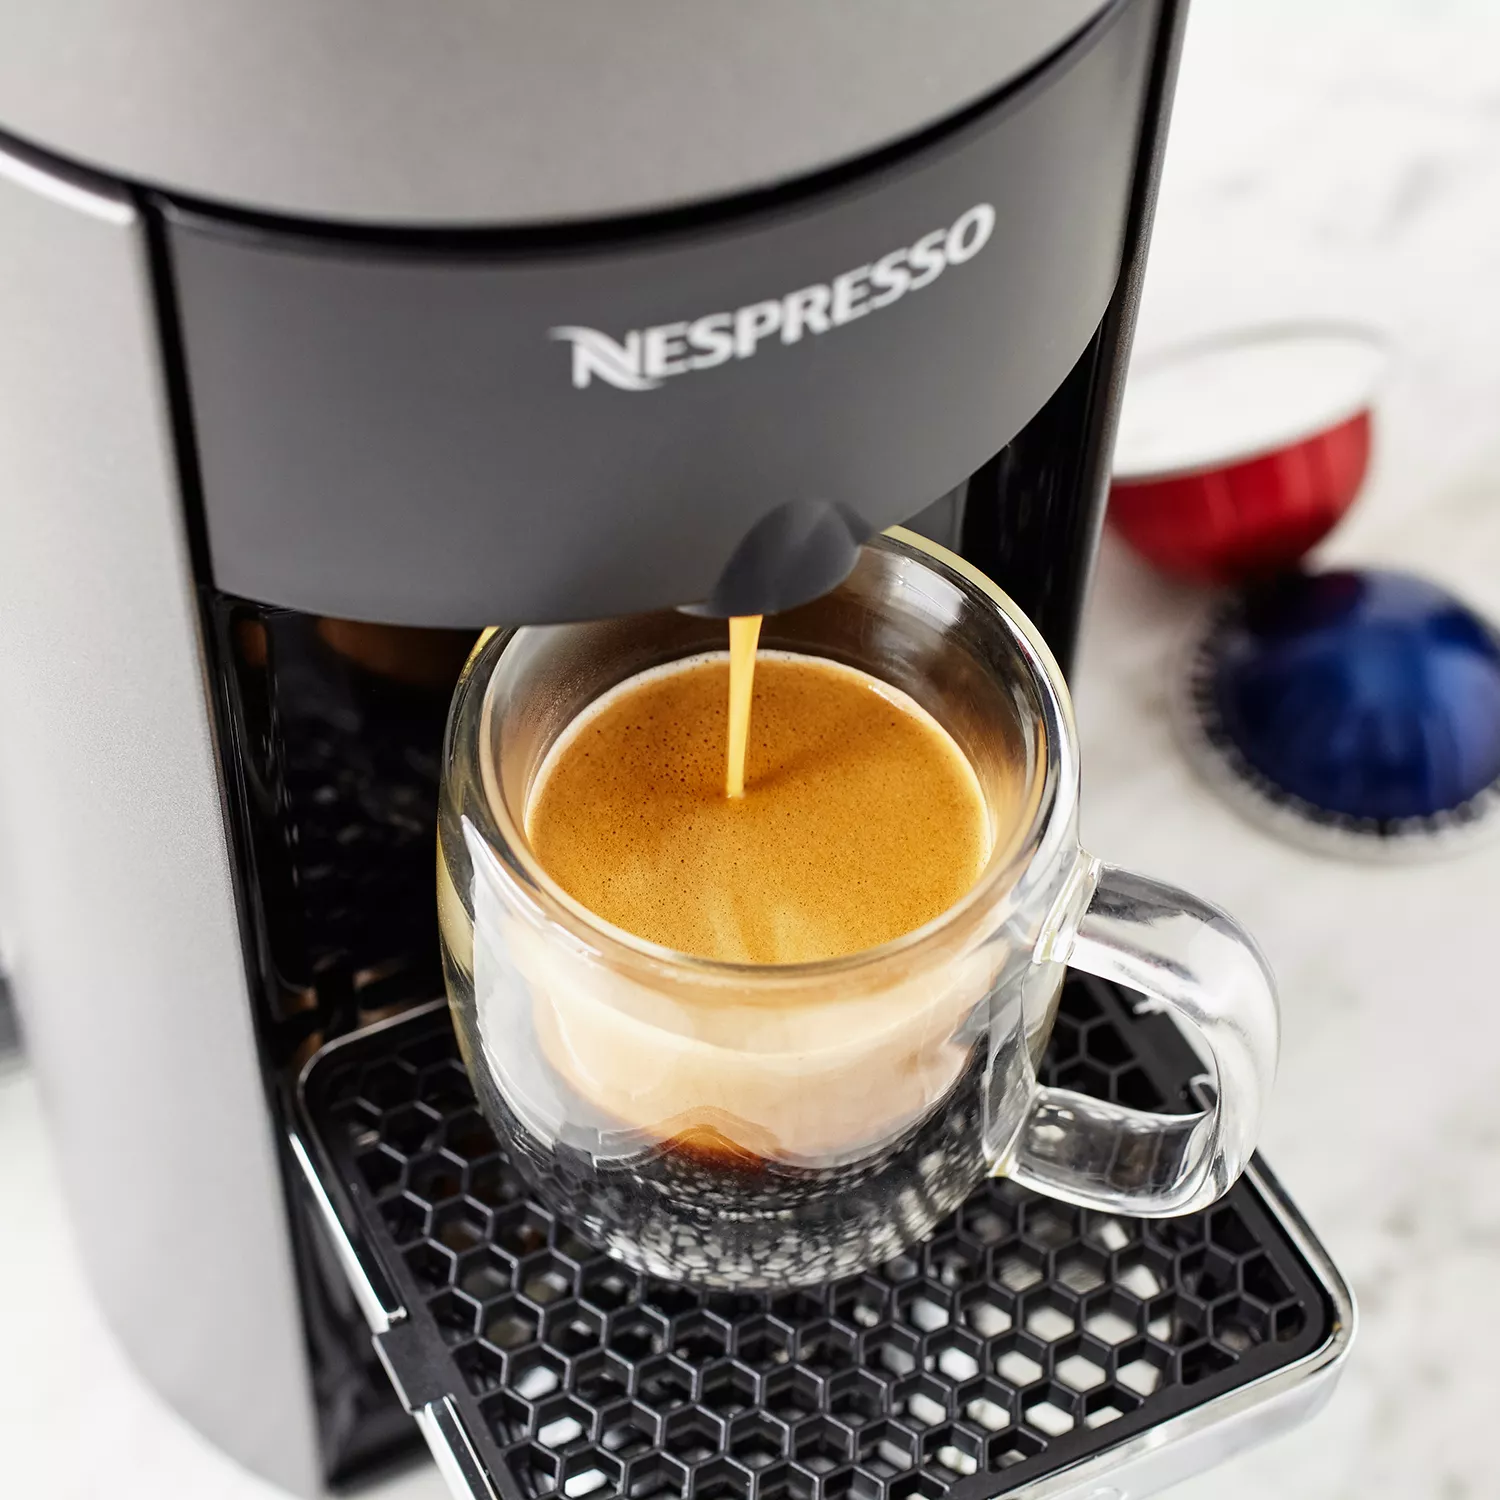  Nespresso Vertuo Coffee and Espresso Machine by De